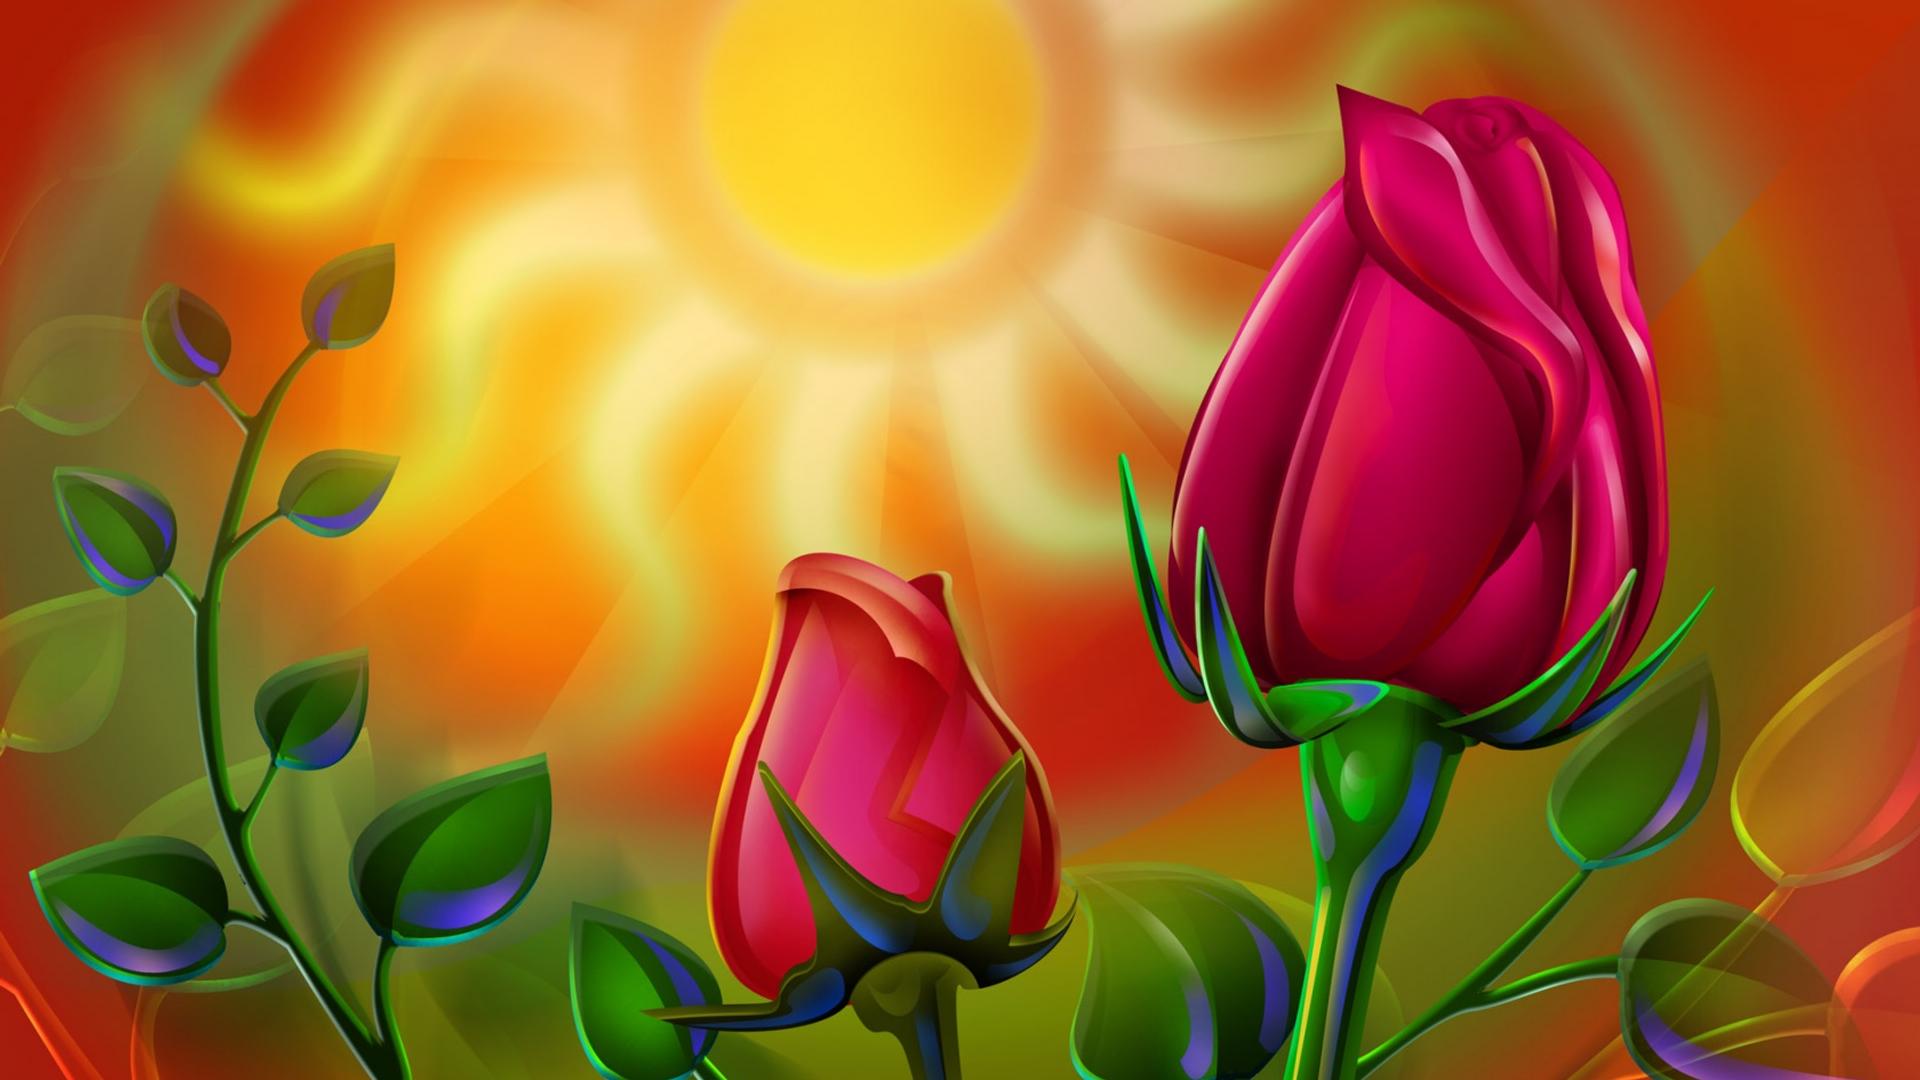 Red rose in the sunlight - Art design wallpaper